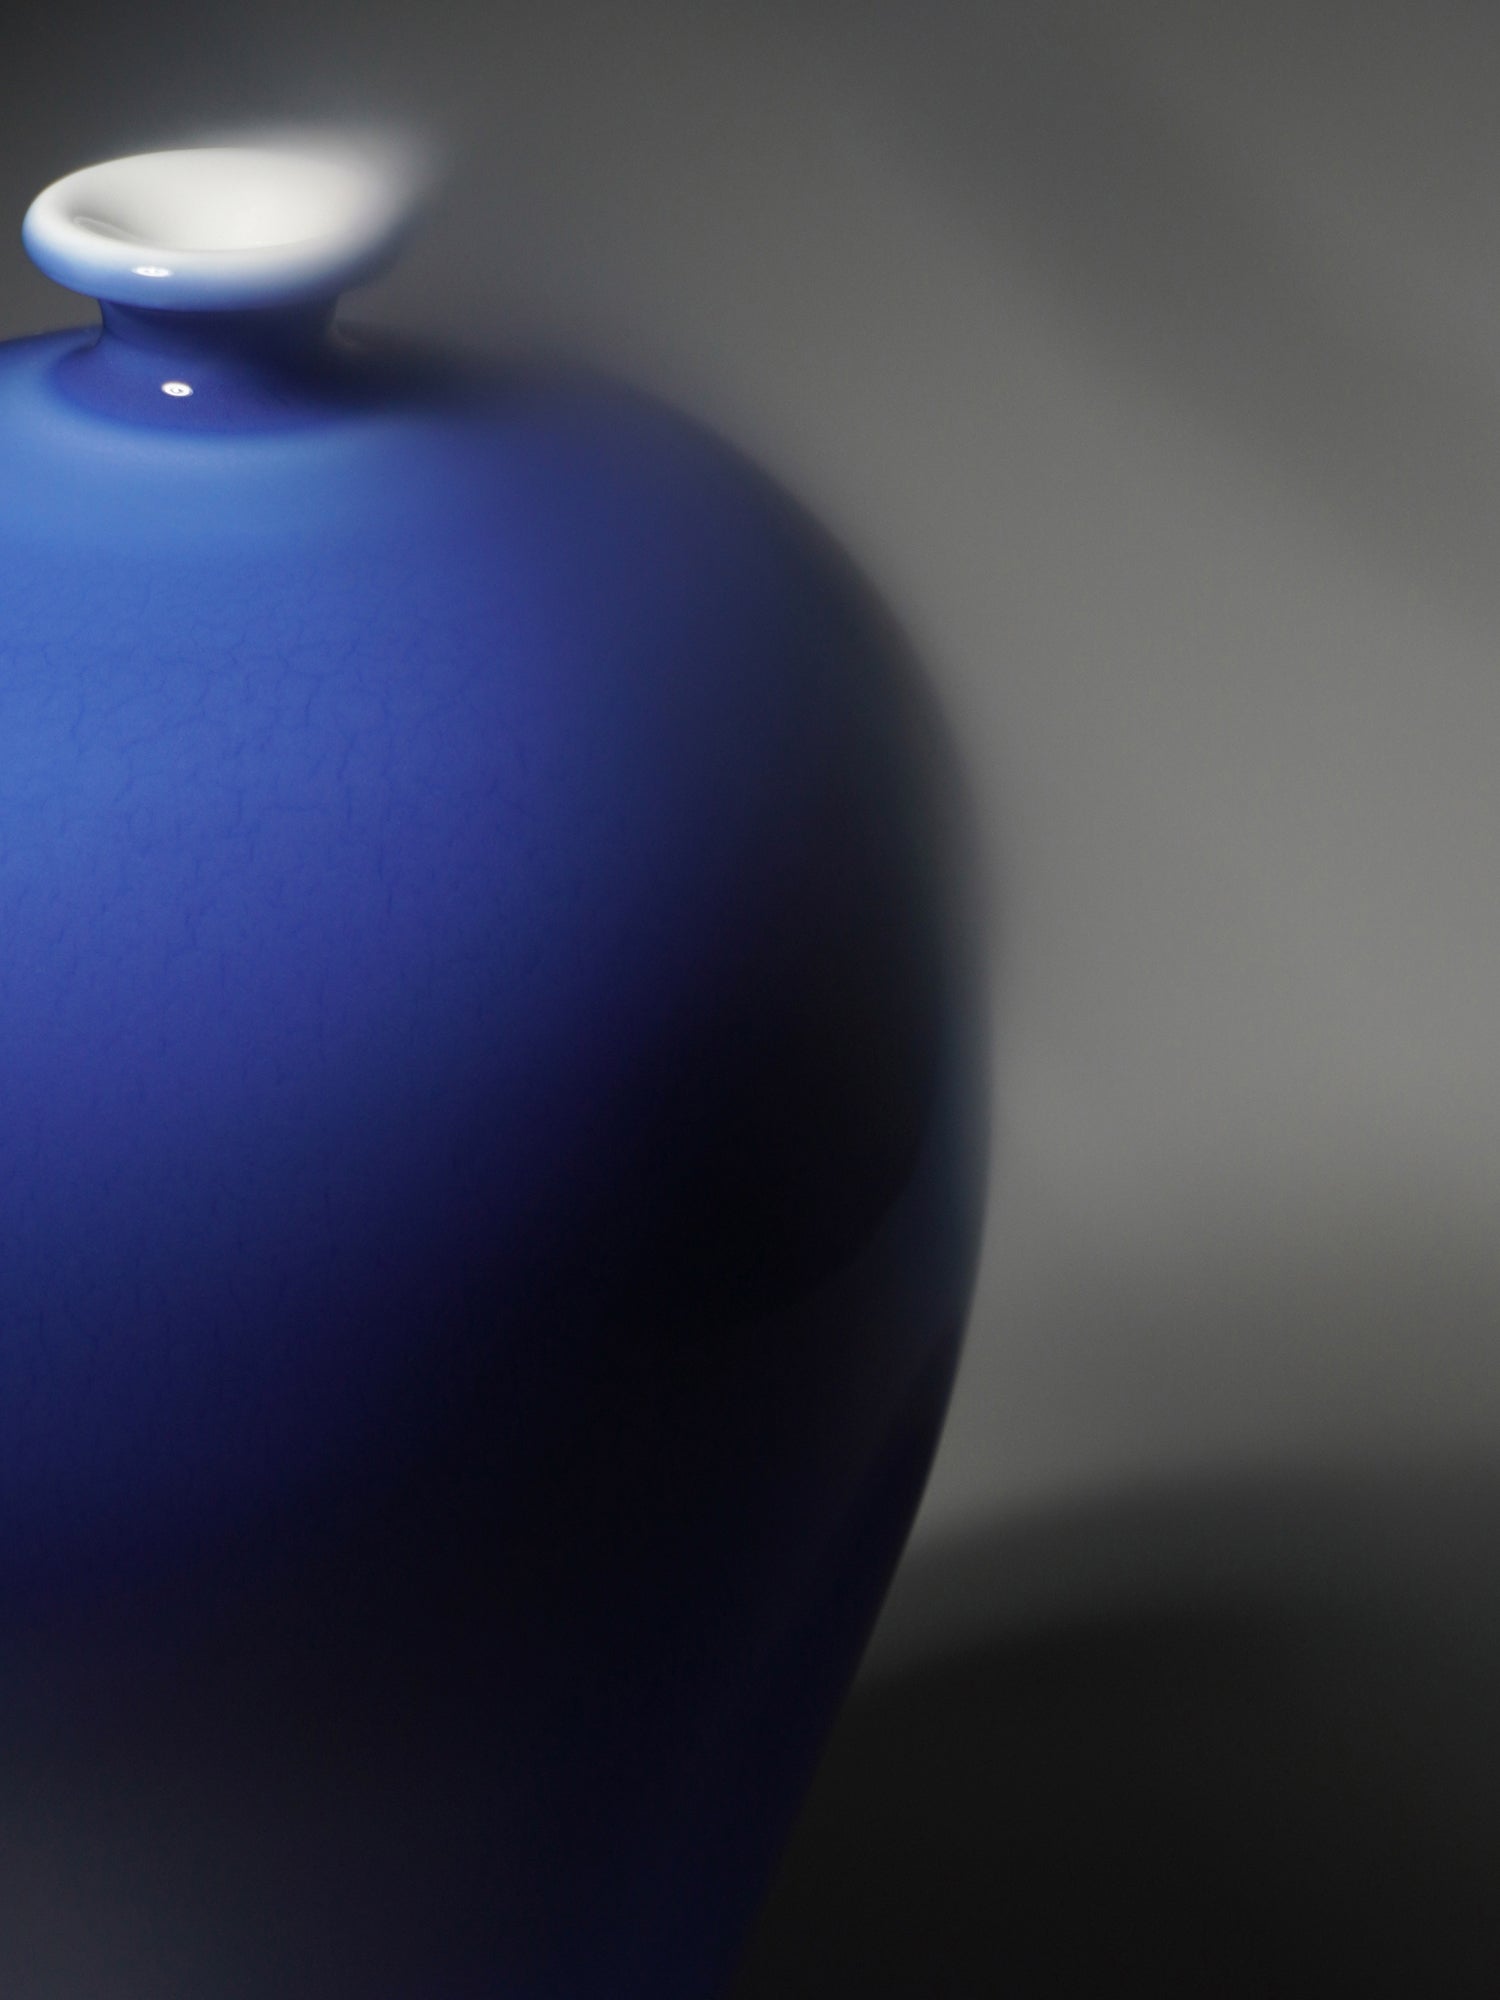 Jingde vase (blue glaze plum vase) - Morrow Land